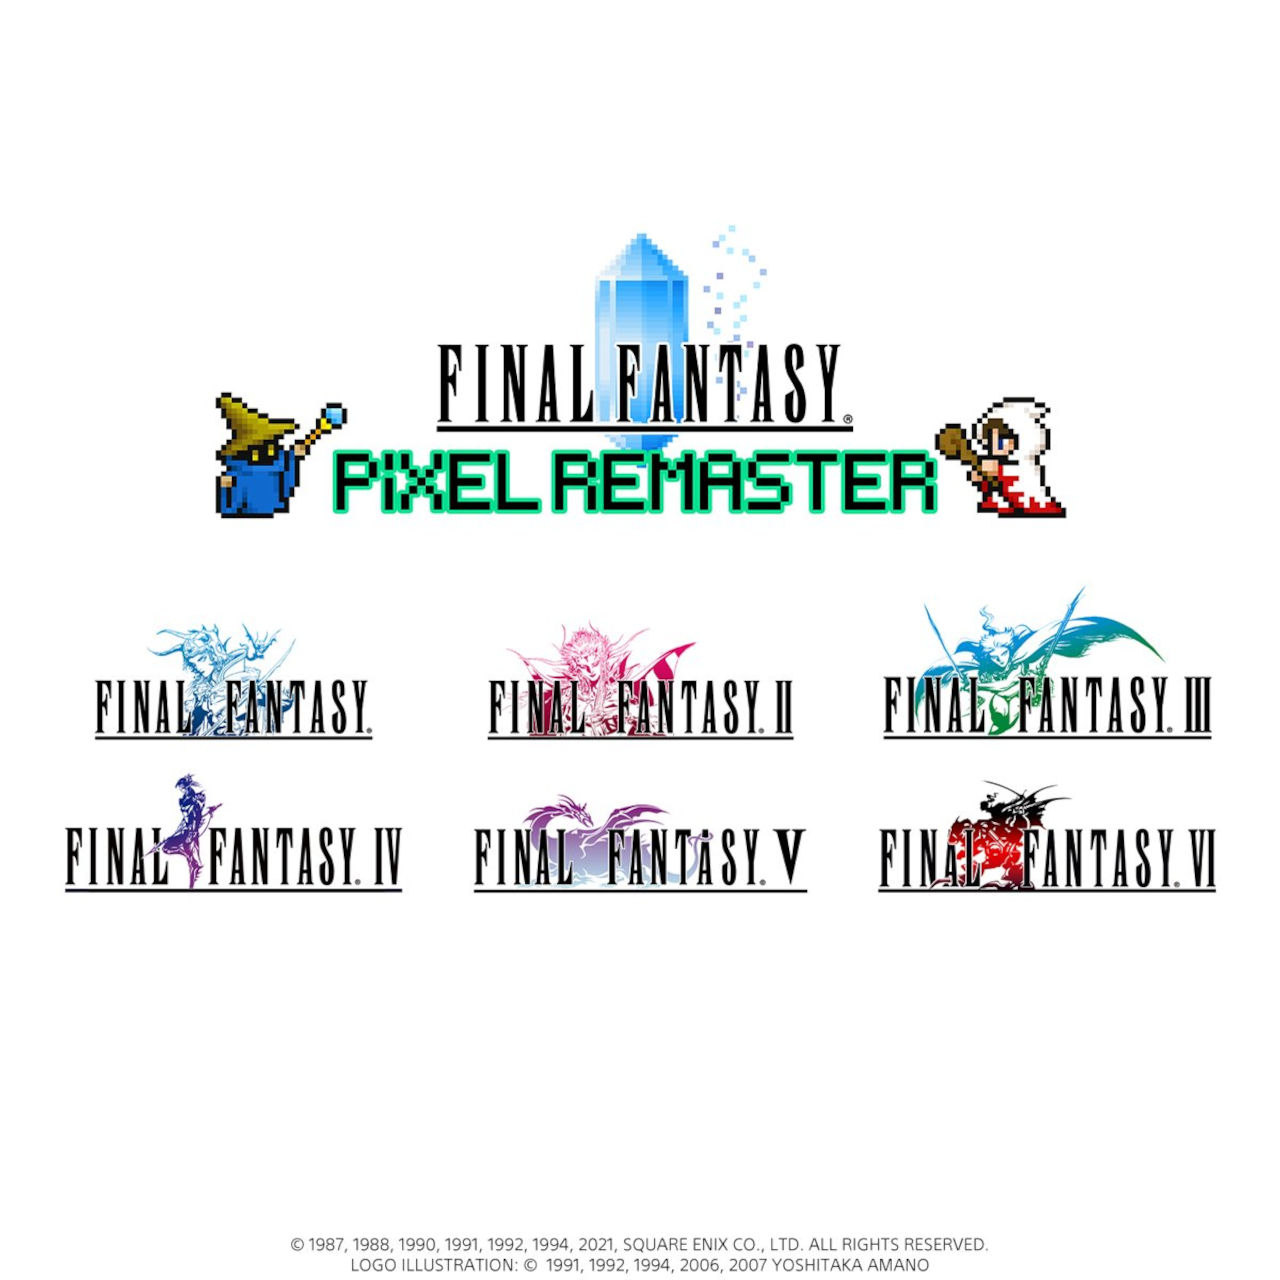 Square Enix hace lo correcto y lanza colección de Final Fantasy Pixel Remaster en formato físico